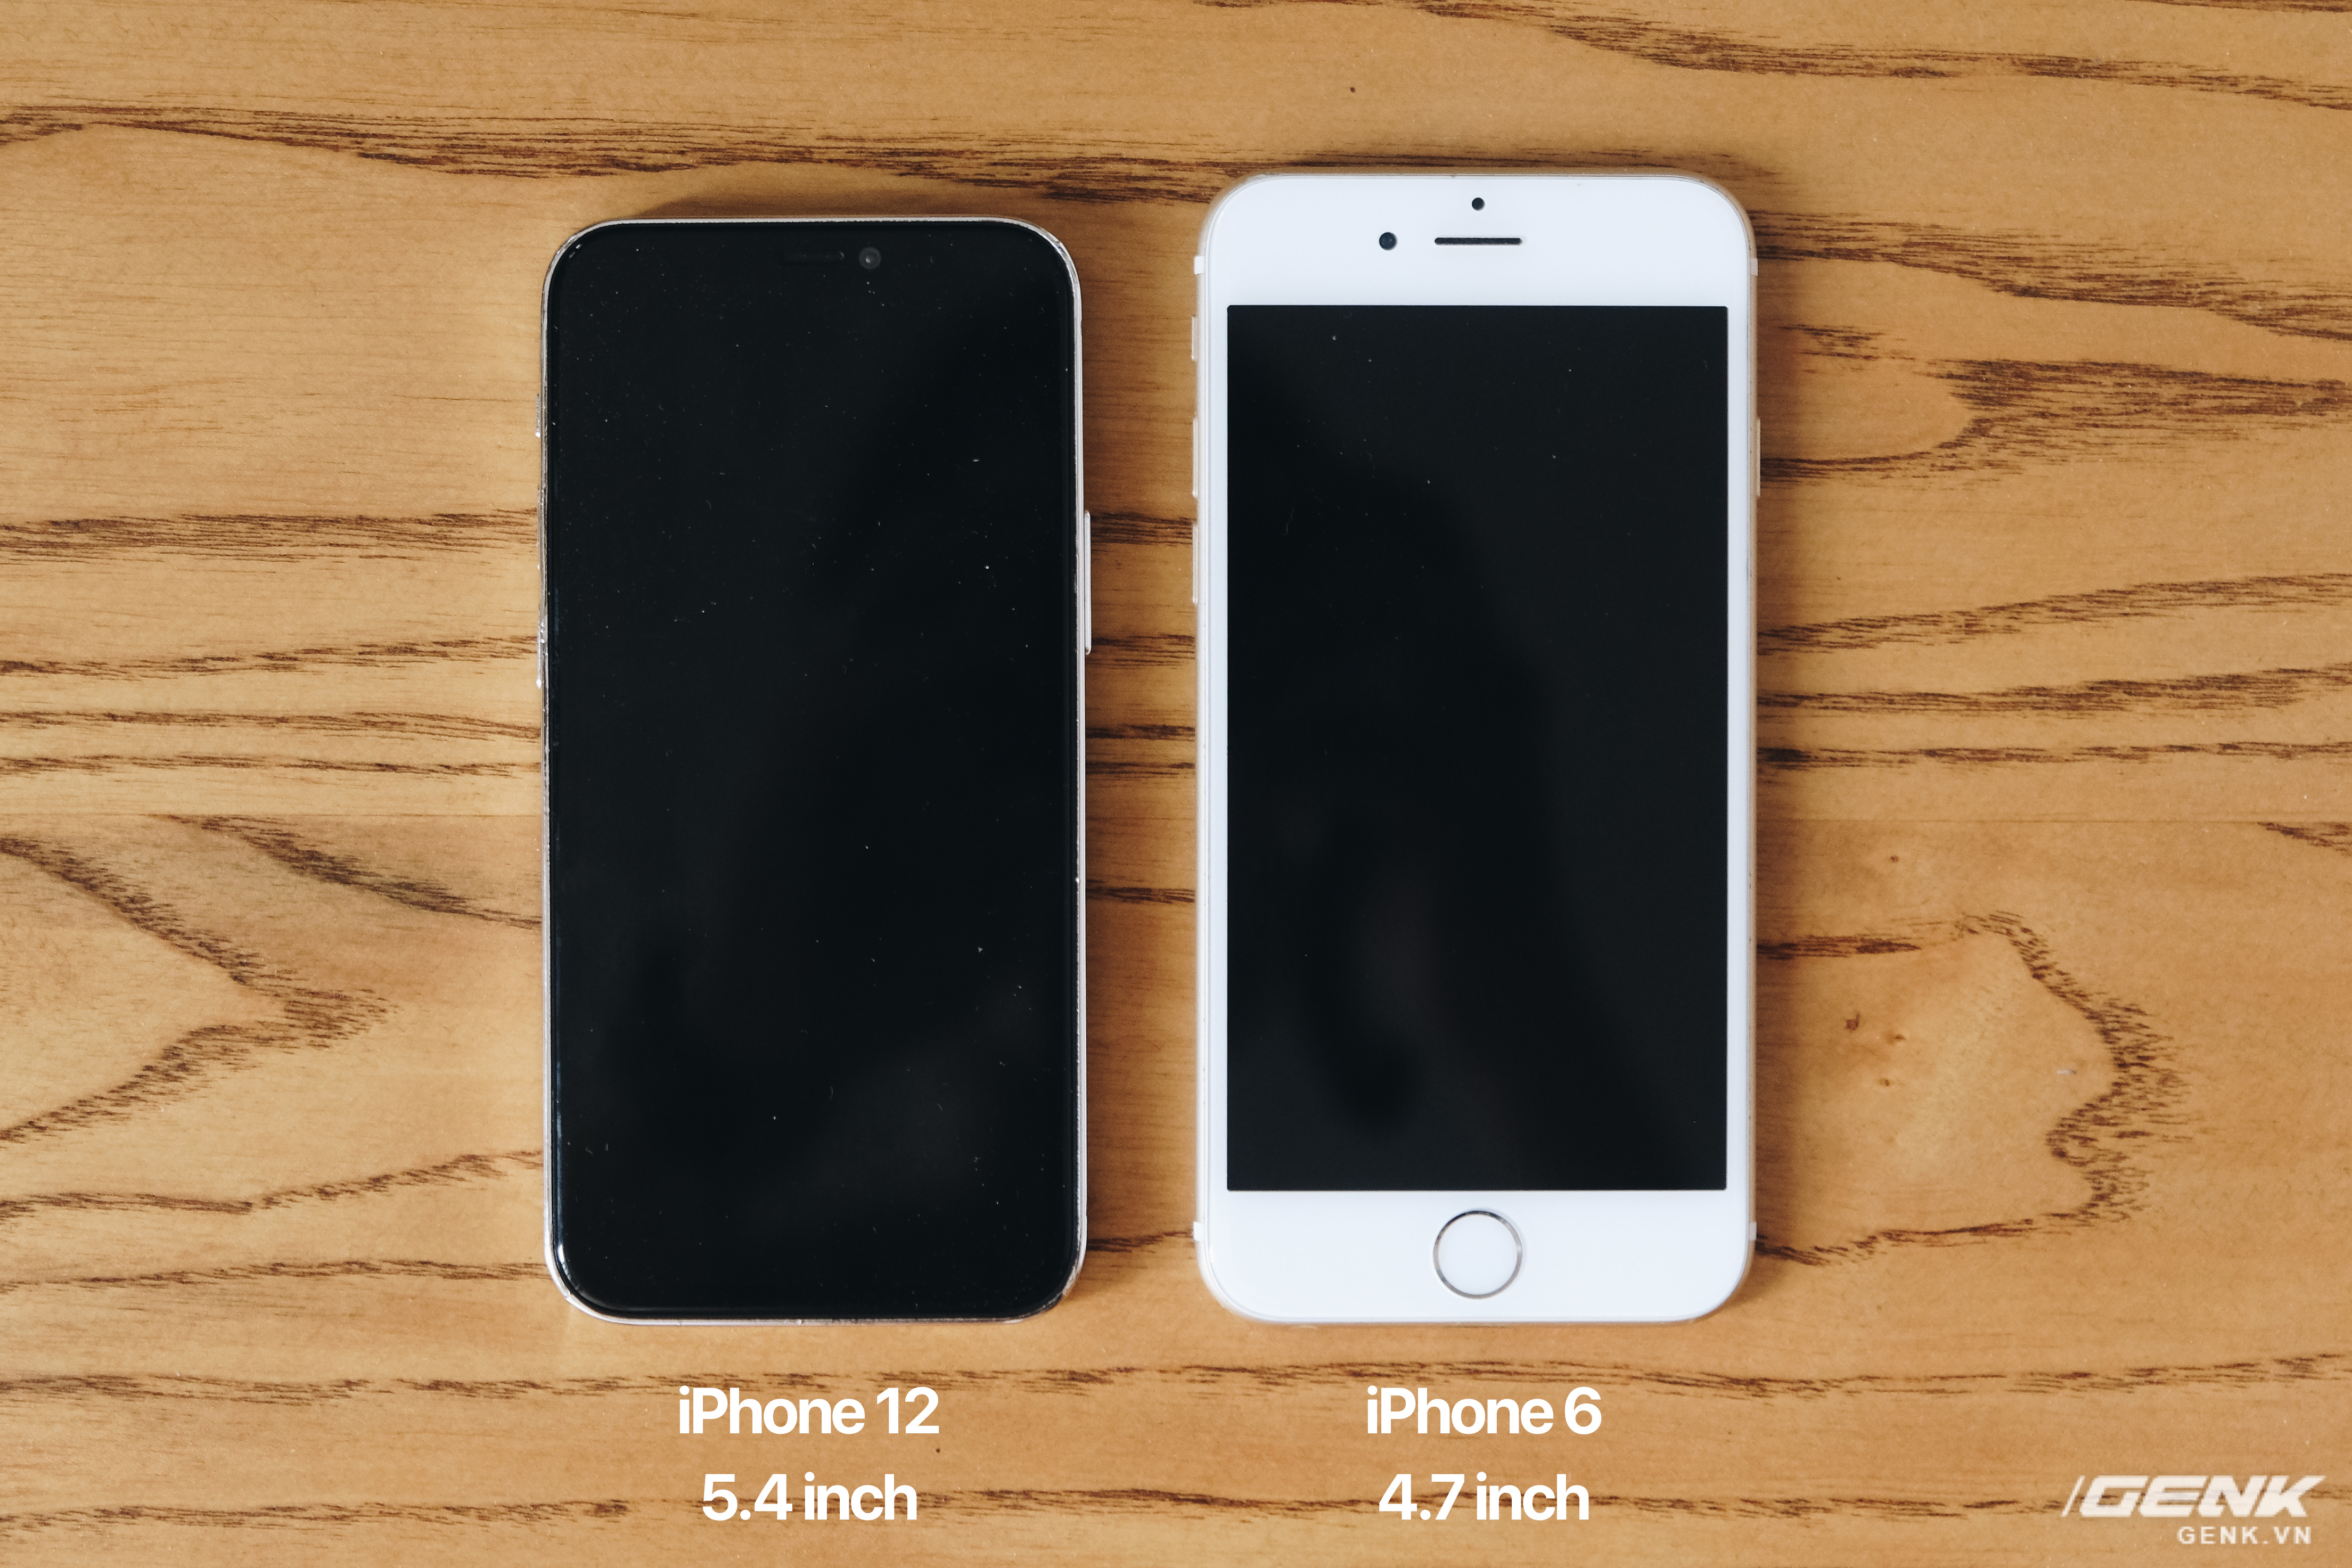 iPhone 12 series: Tất cả mọi thứ đều tuyệt vời với iPhone 12 Series! Từ iPhone 12 mini đến iPhone 12 Pro Max, chiếc điện thoại này đem tới cho bạn những tính năng tuyệt vời như màn hình OLED Super Retina XDR, chip A14 Bionic và 5G tốc độ cao. Hãy tưởng tượng tất cả những gì bạn có thể làm trên điện thoại thông minh - iPhone 12 Series đều có thể phục vụ bạn tốt nhất!